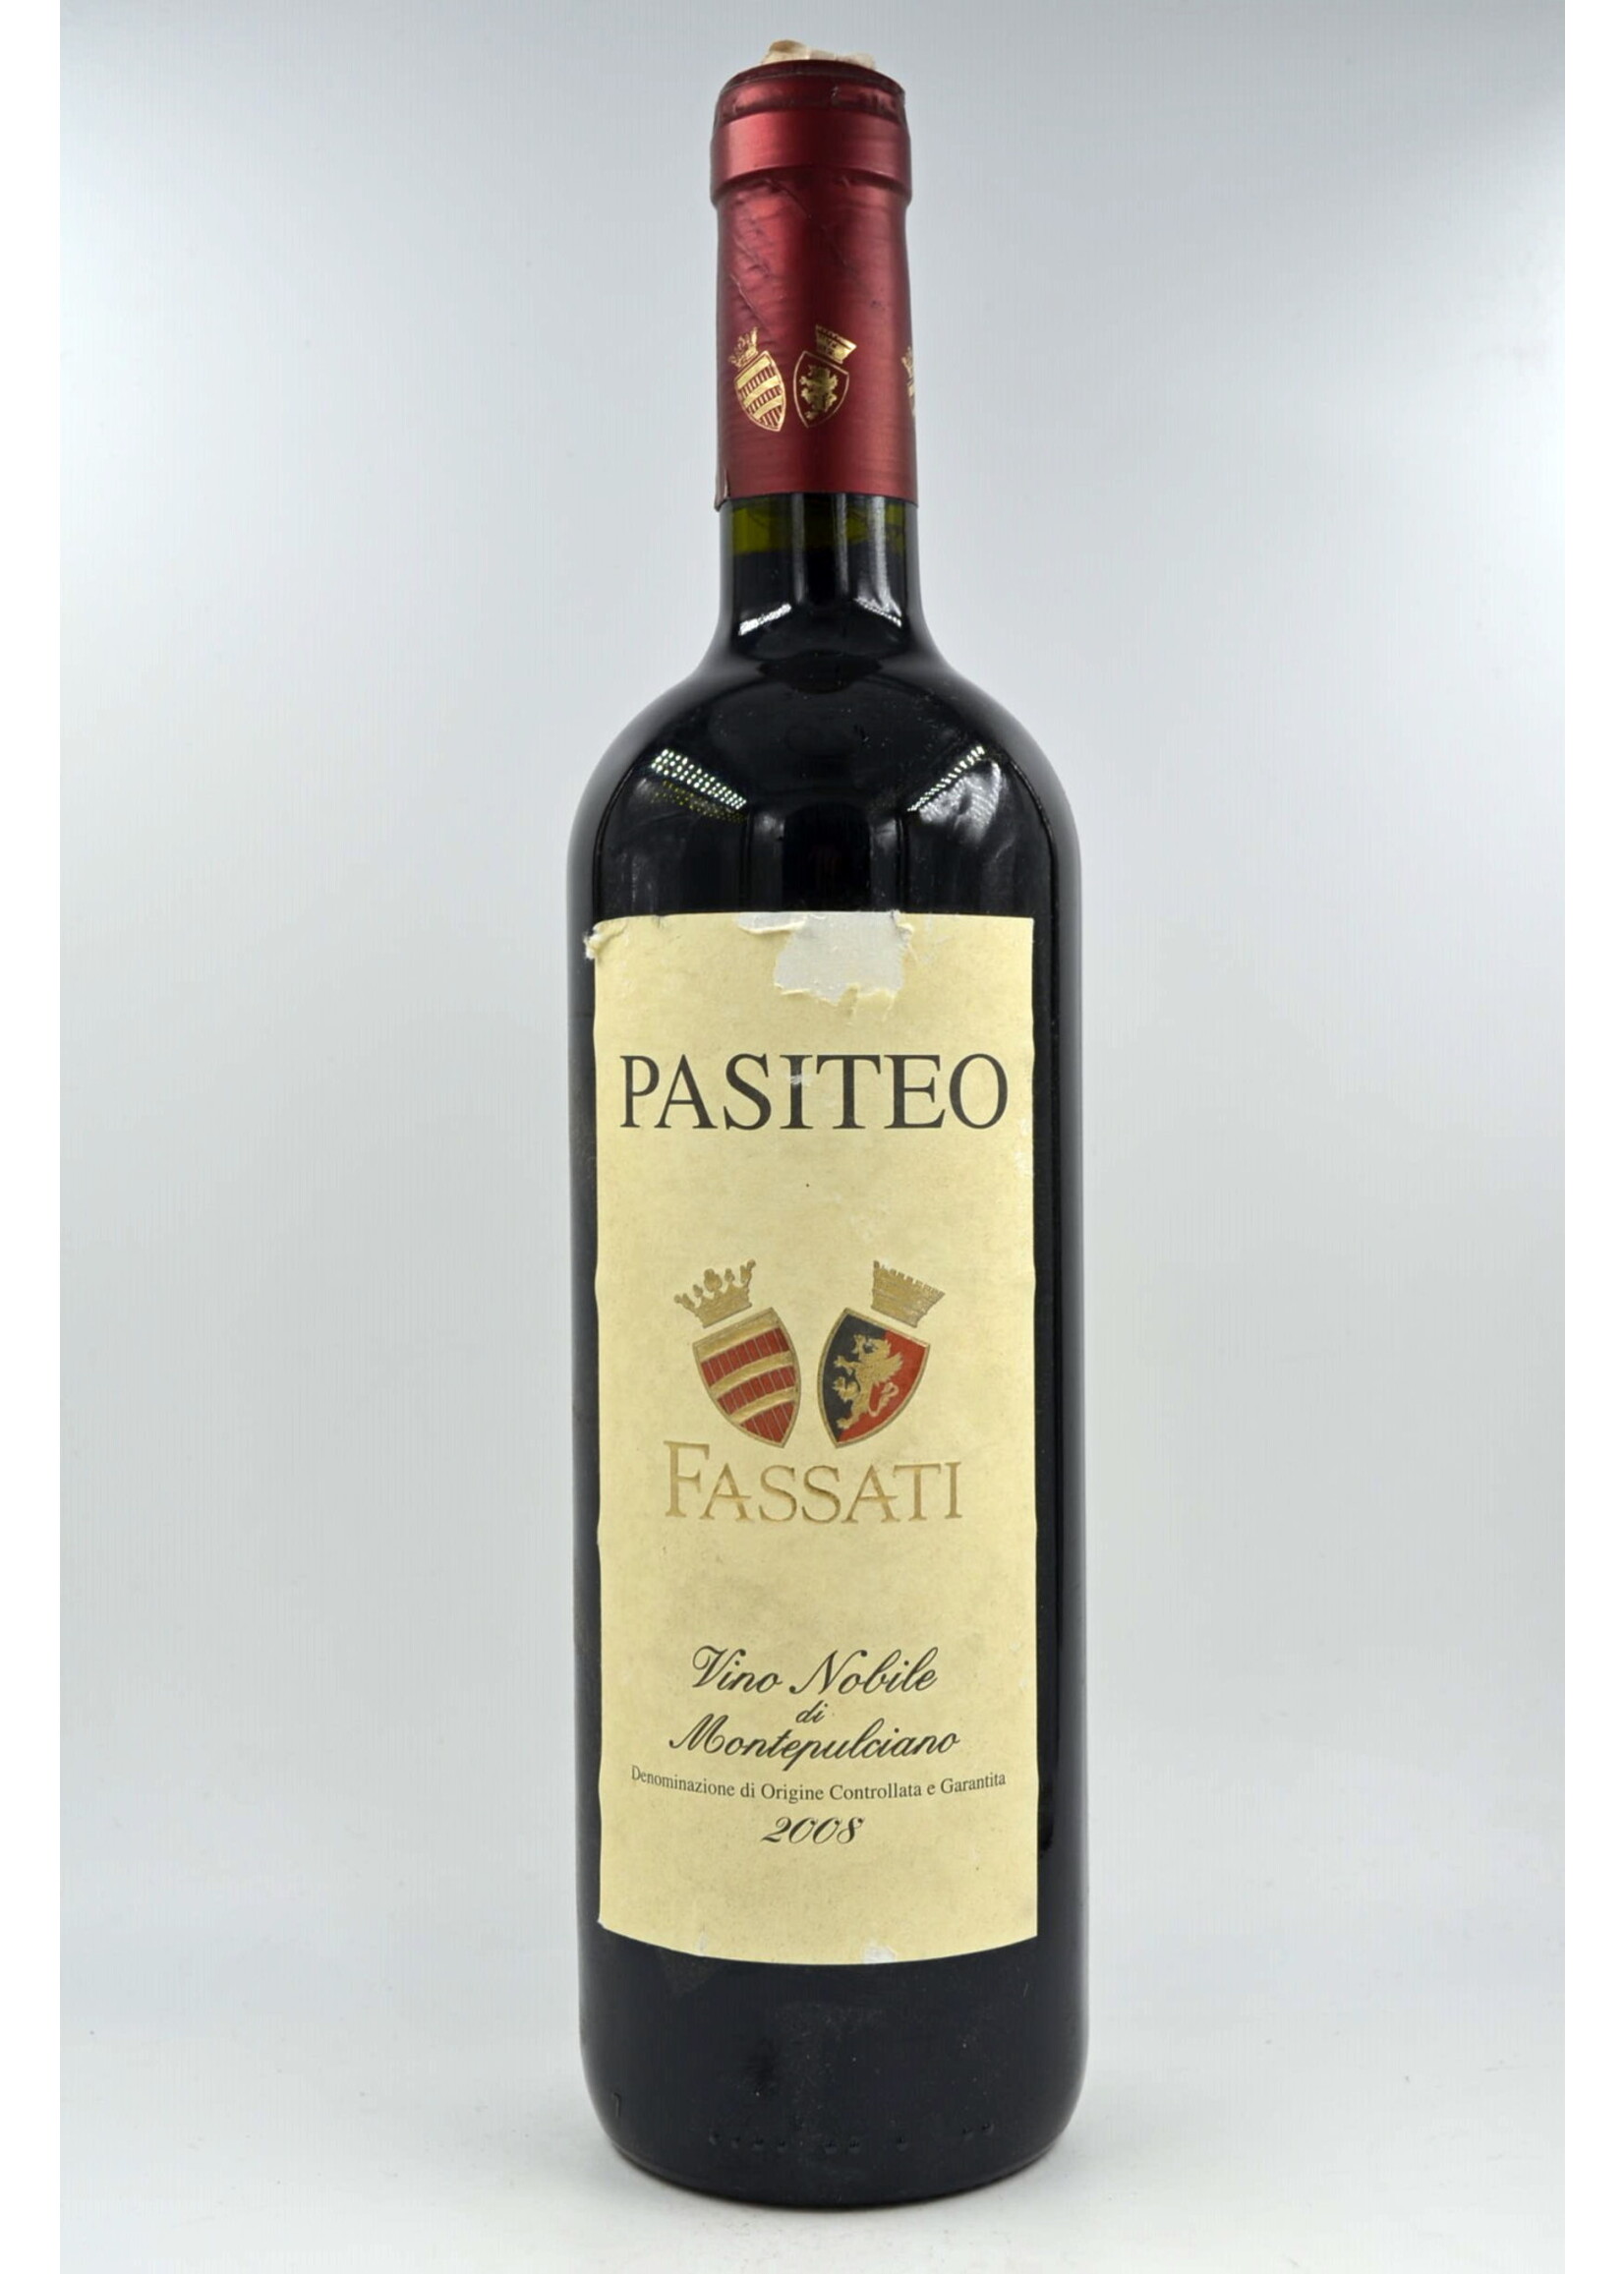 2008 Vino Nobile di Montepulciano Pasiteo Fassati (sdl/dl)